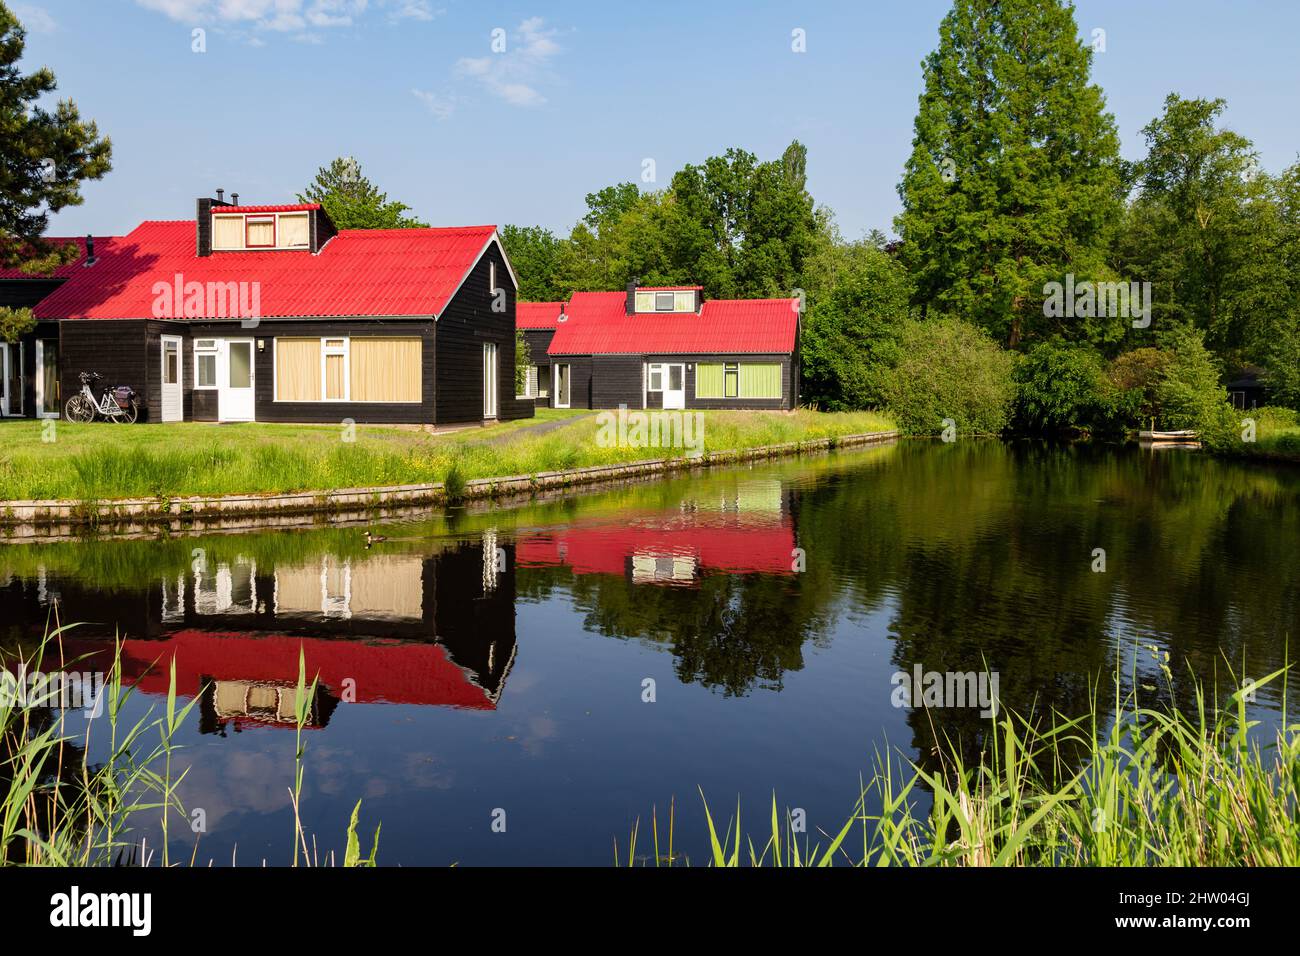 Petites maisons de vacances confortables avec des toits rouges reflétés dans l'eau Banque D'Images